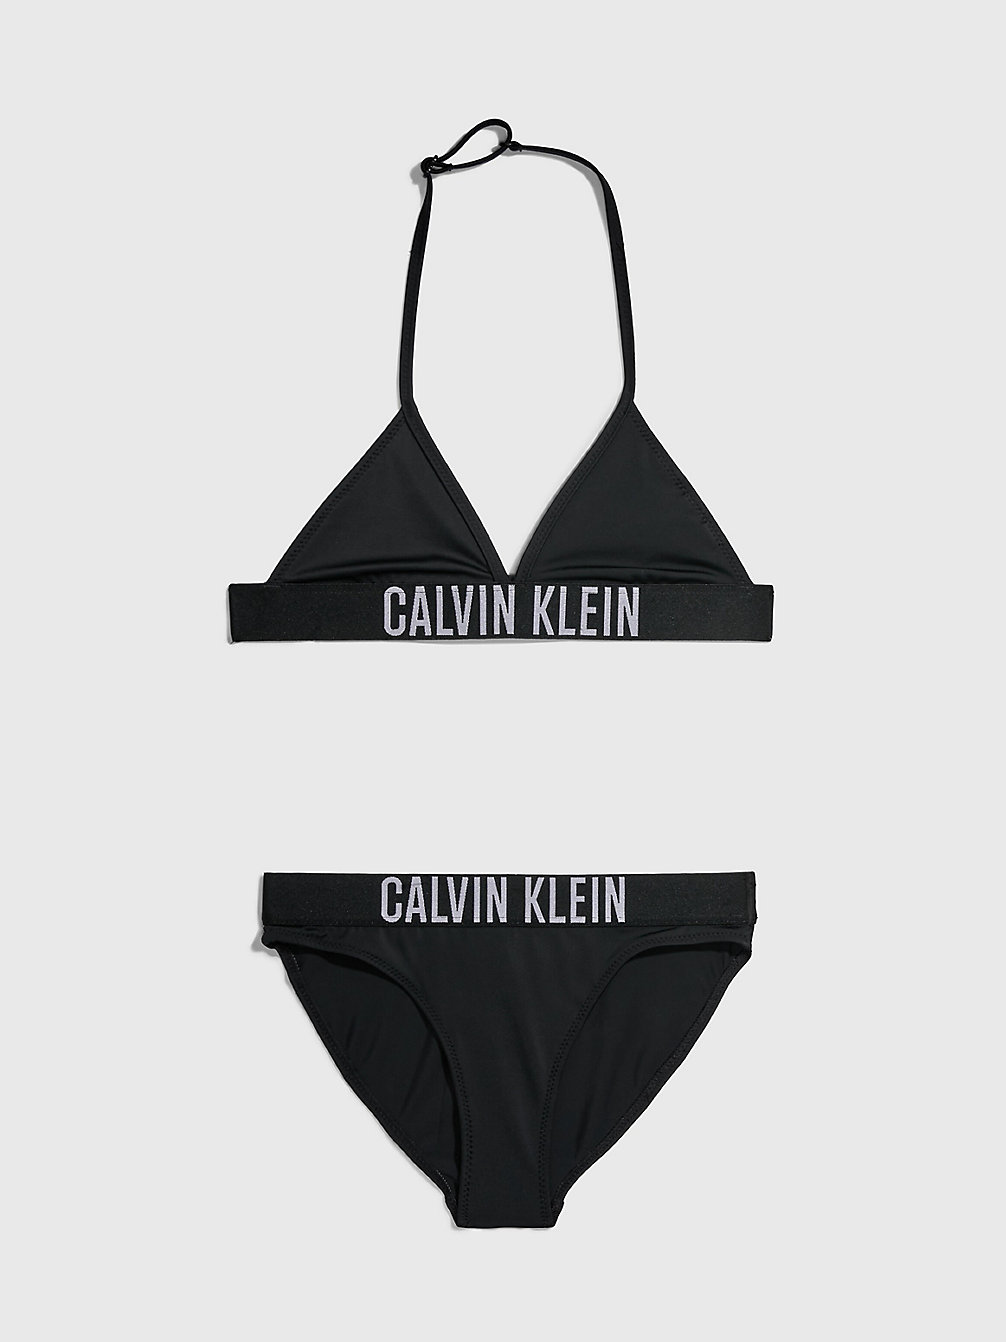 PVH BLACK > Dziewczęcy Dwuczęściowy Strój Kąpielowy Z Trójkątnym Bikini - Intense Power > undefined Dziewczynki - Calvin Klein